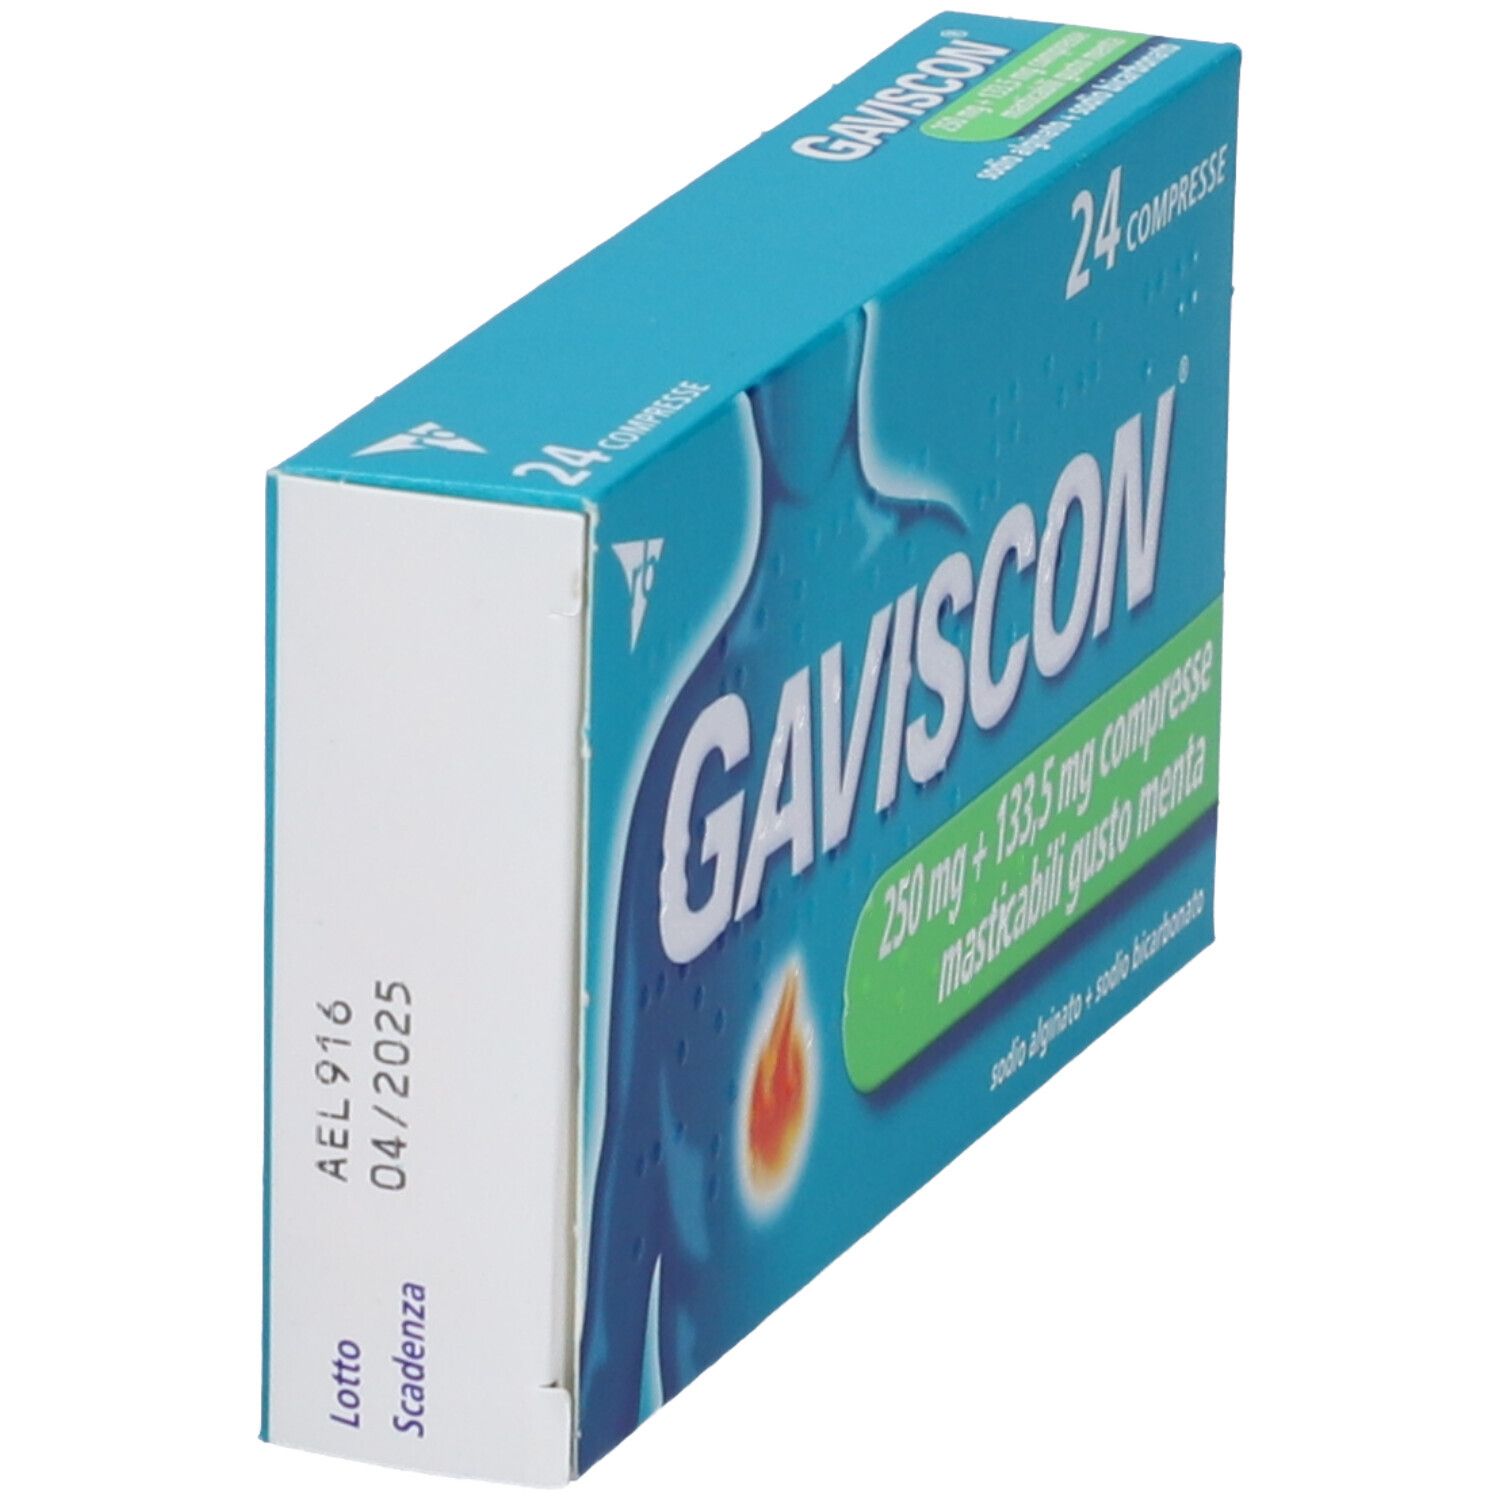 GAVISCON® 250 mg+133,5 mg Compresse masticabili menta